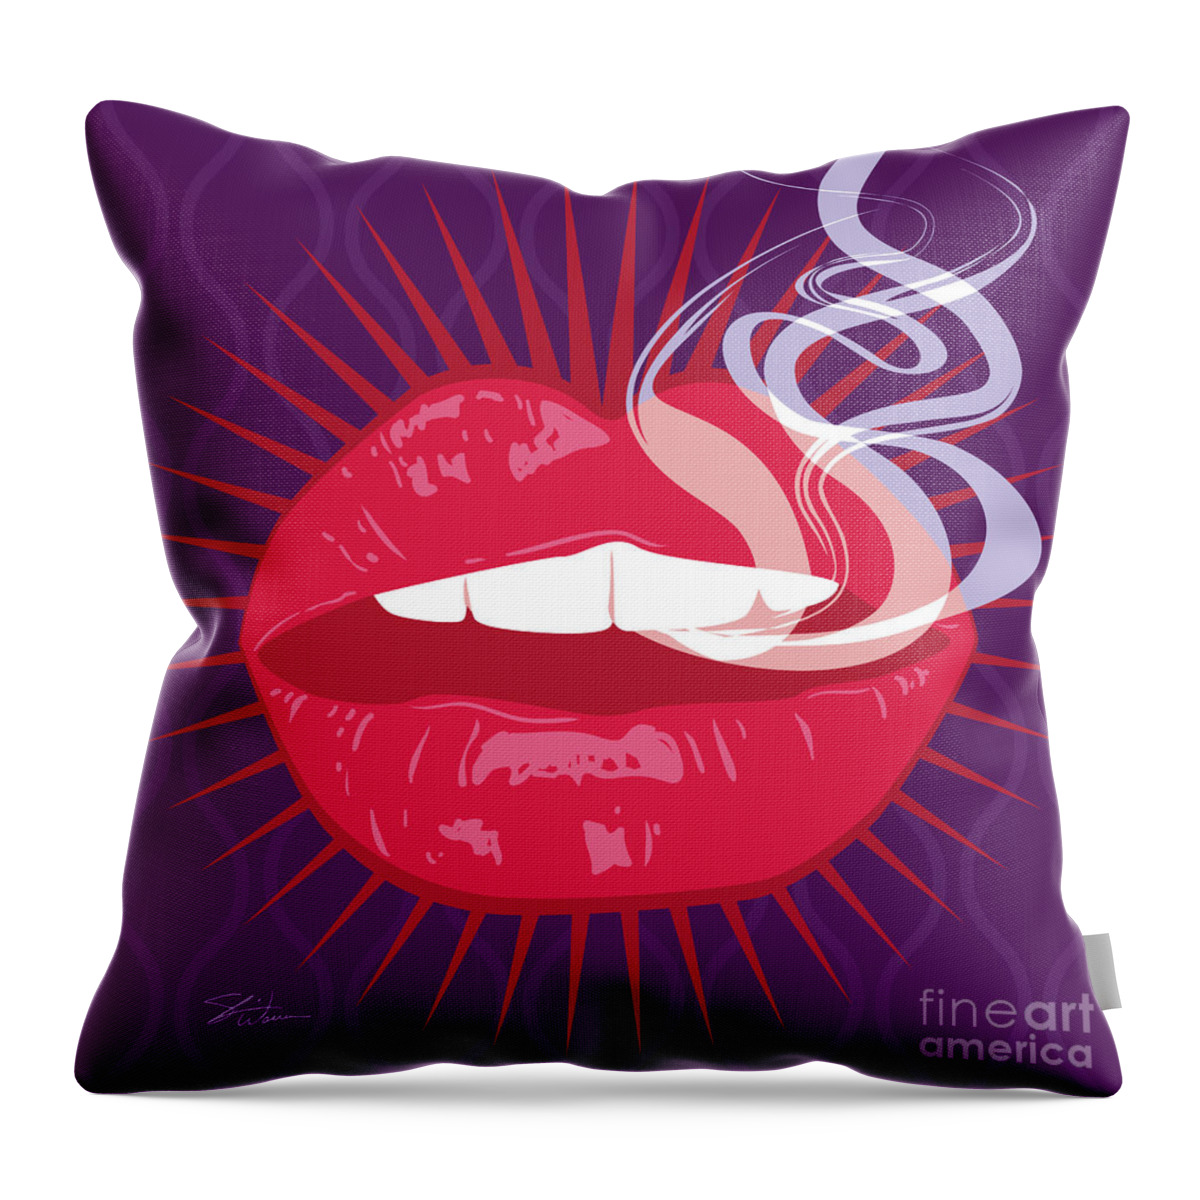 Lips Throw Pillow featuring the digital art Hot Lips by Shari Warren